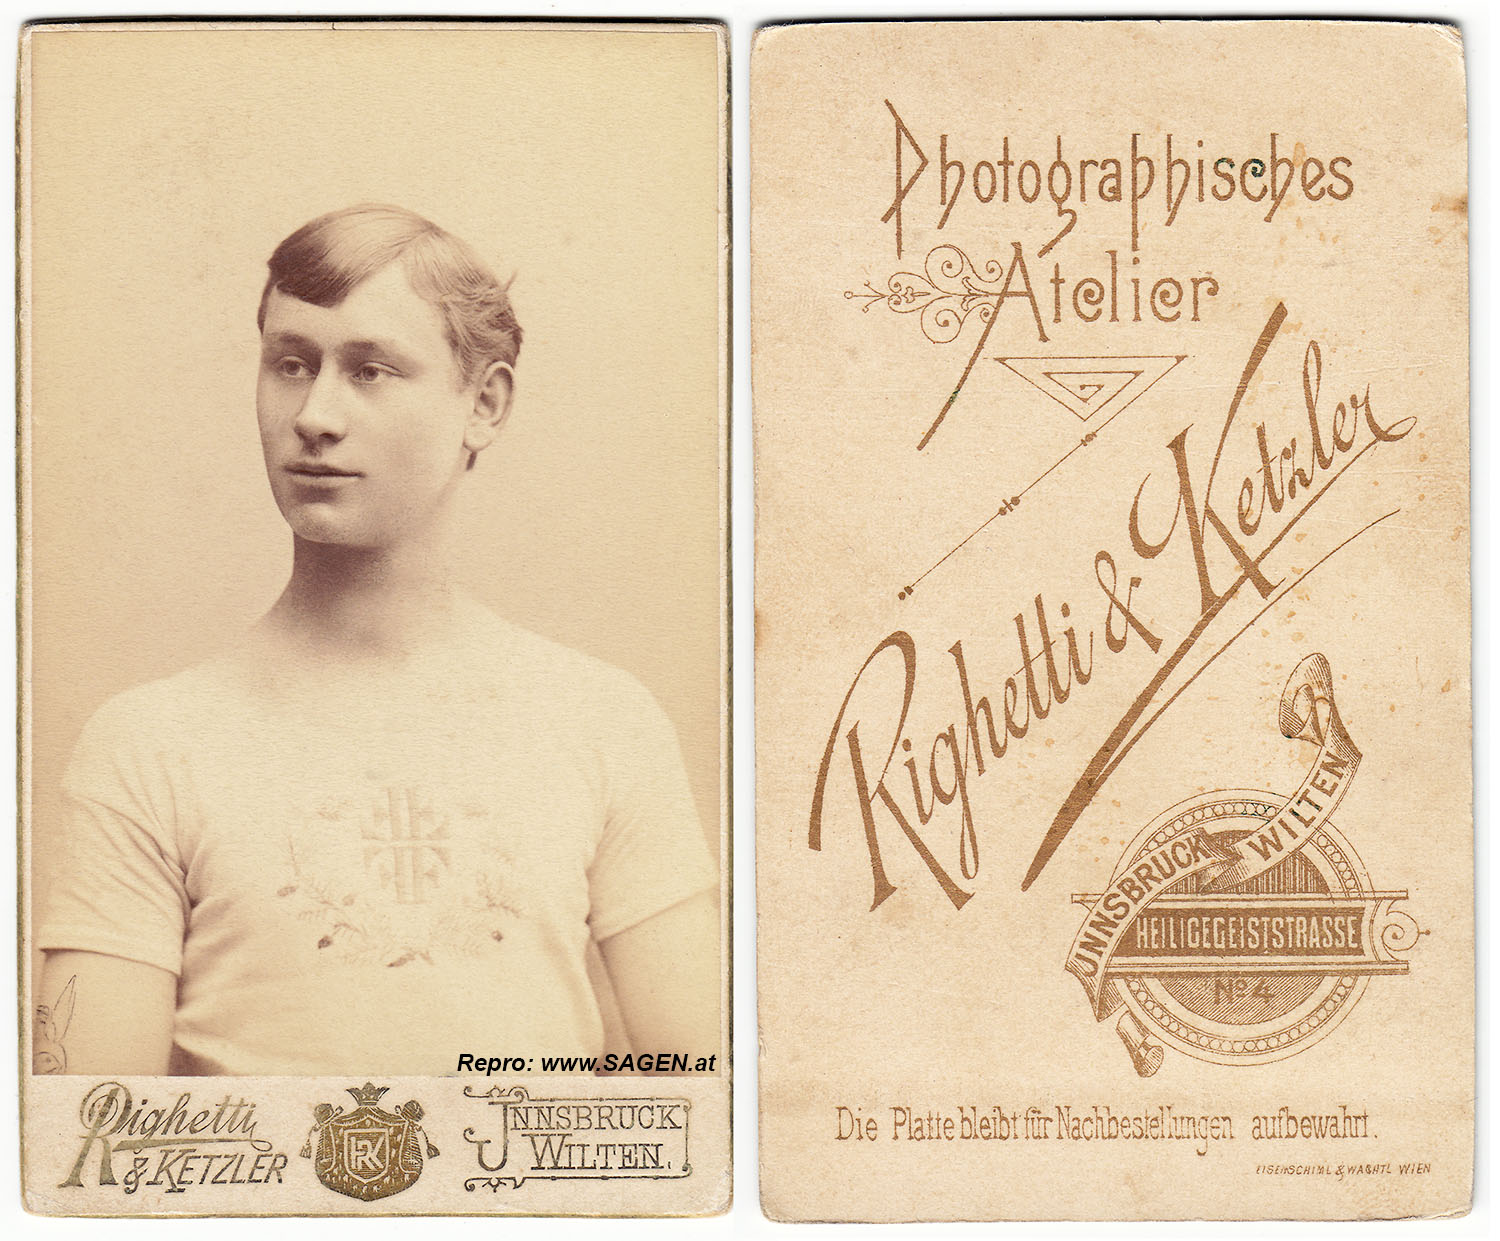 Tattoo Herrenporträt 1890, Righetti & Ketzler, Innsbruck Wilten